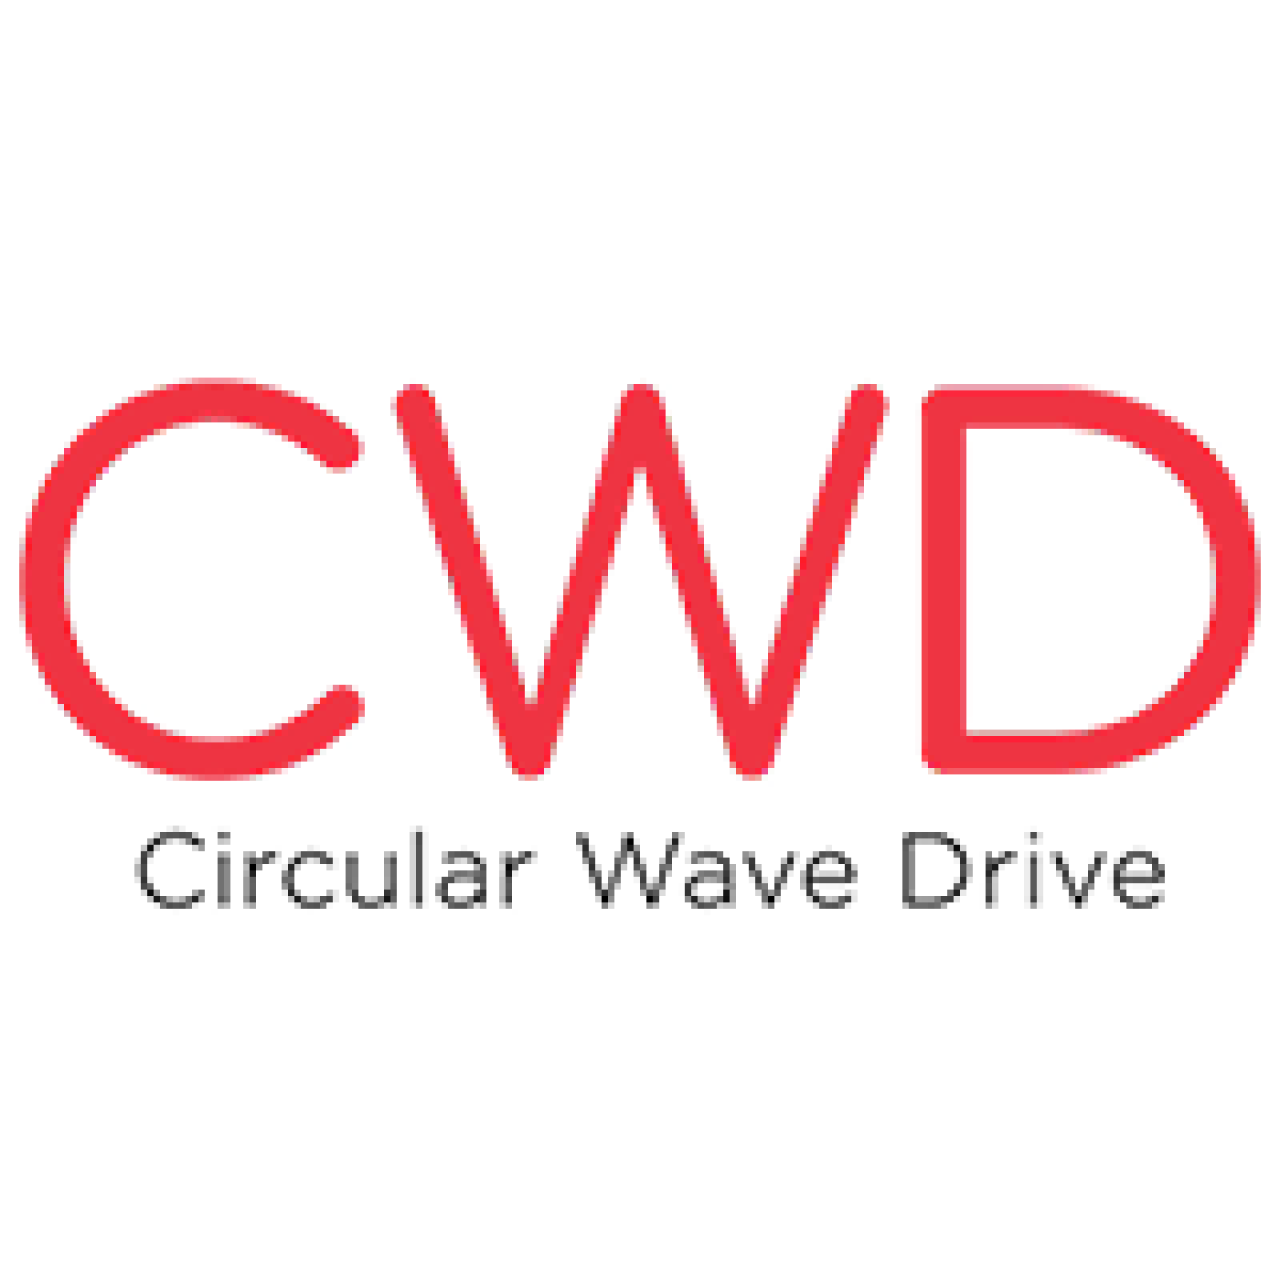 cwd logo